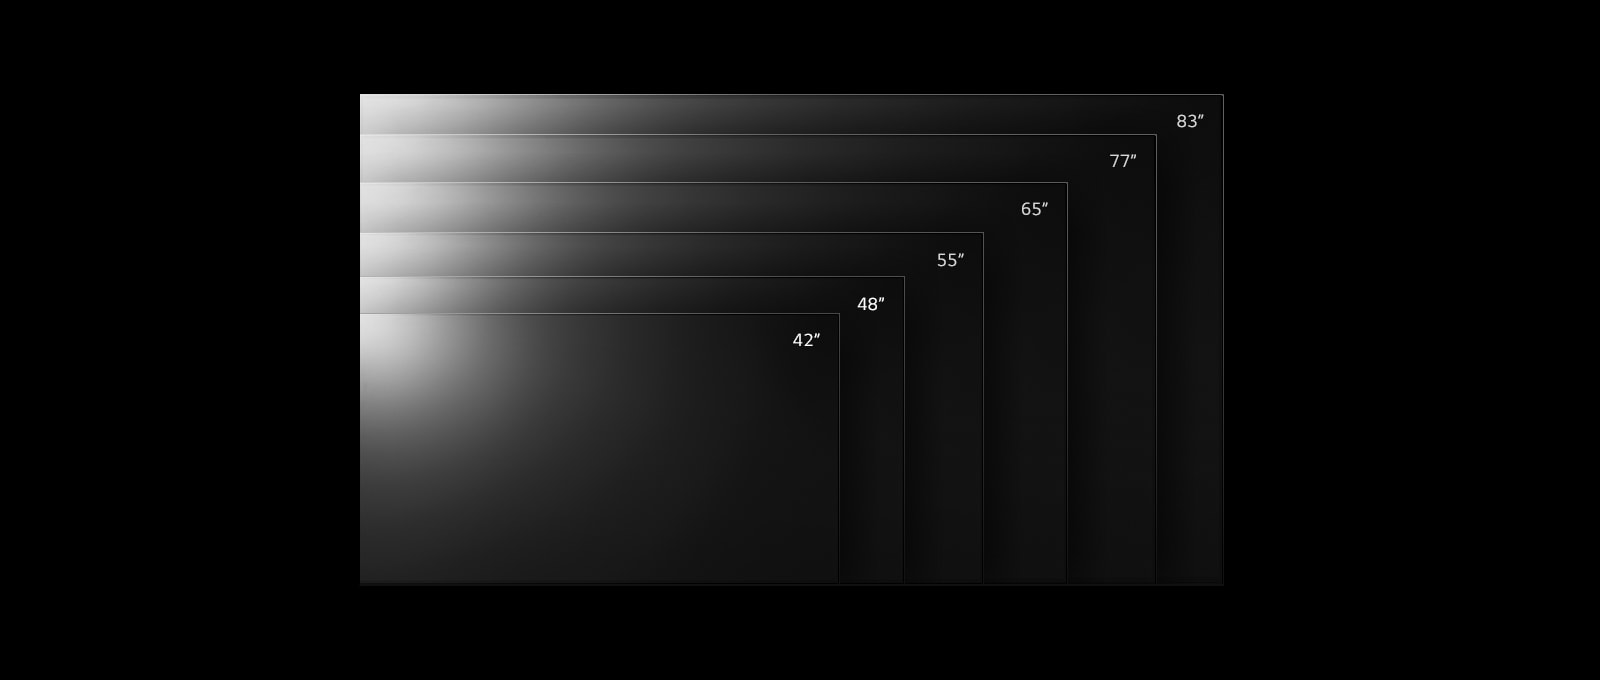 รุ่นทีวี LG OLED C2 มีหลายขนาดตั้งแต่ 55 นิ้วไปจนถึง 42 นิ้ว